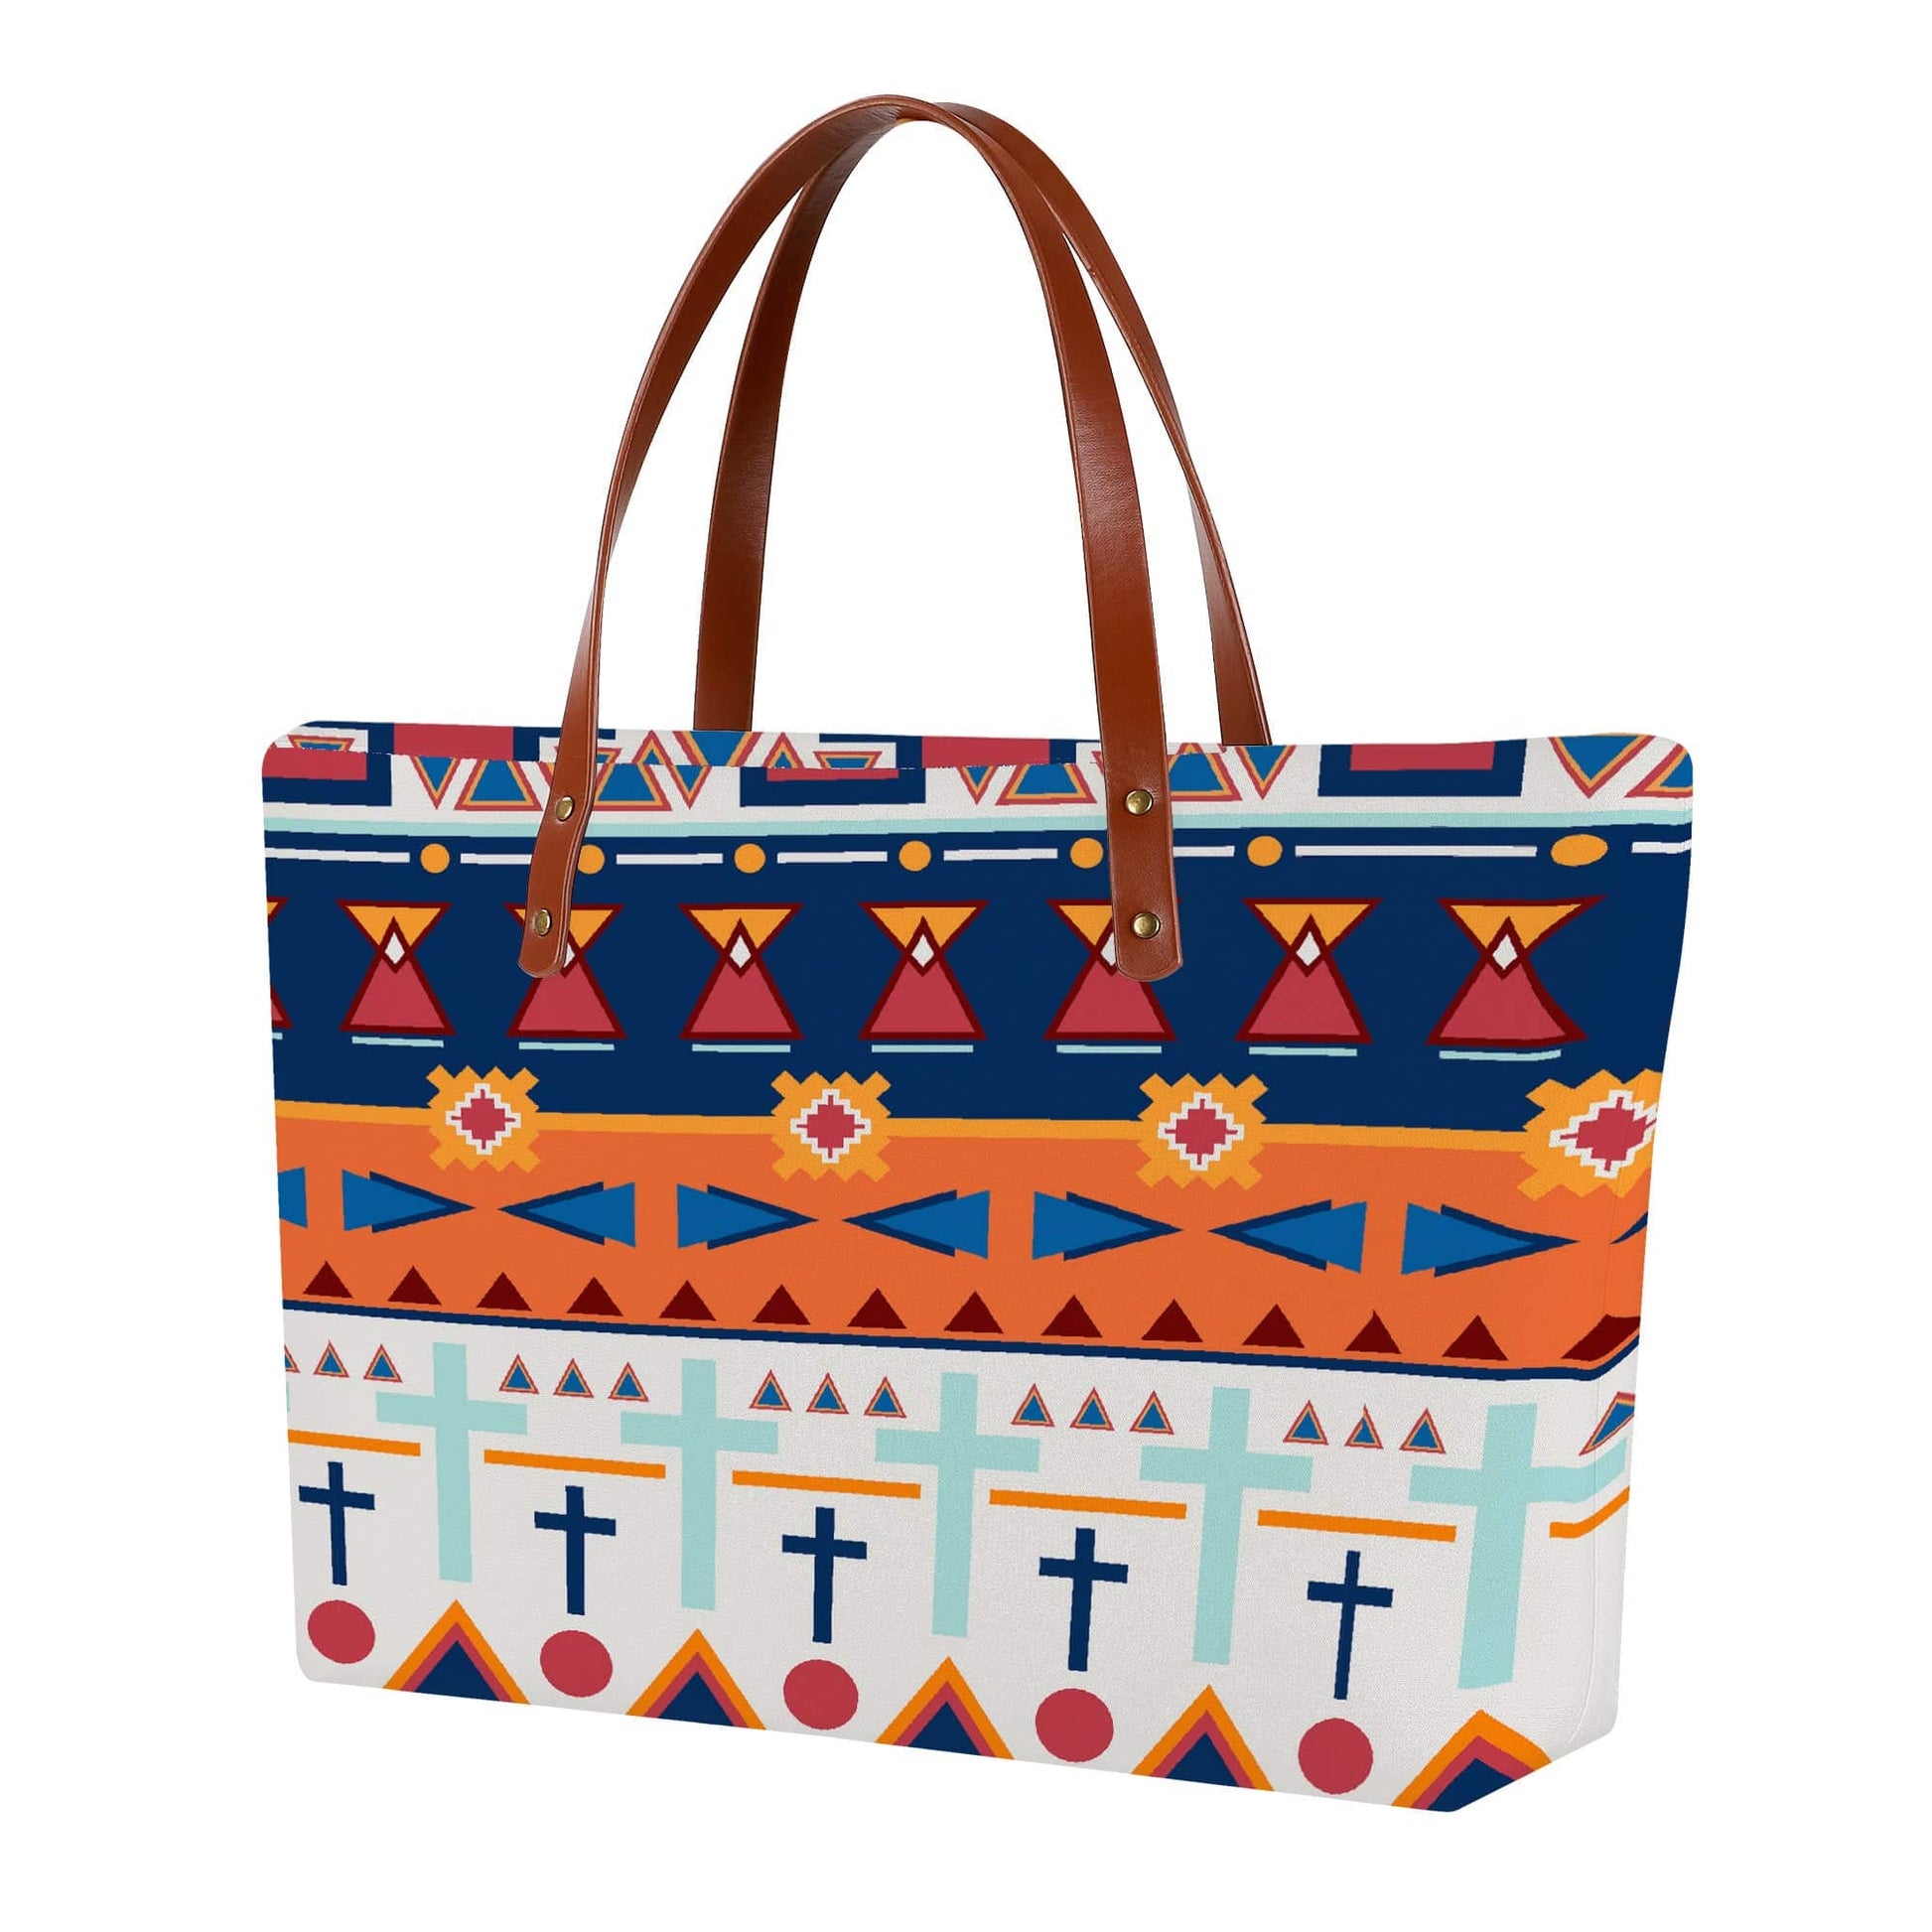 Navajo Print Textured Tote Bag Purse - Expressive DeZien 